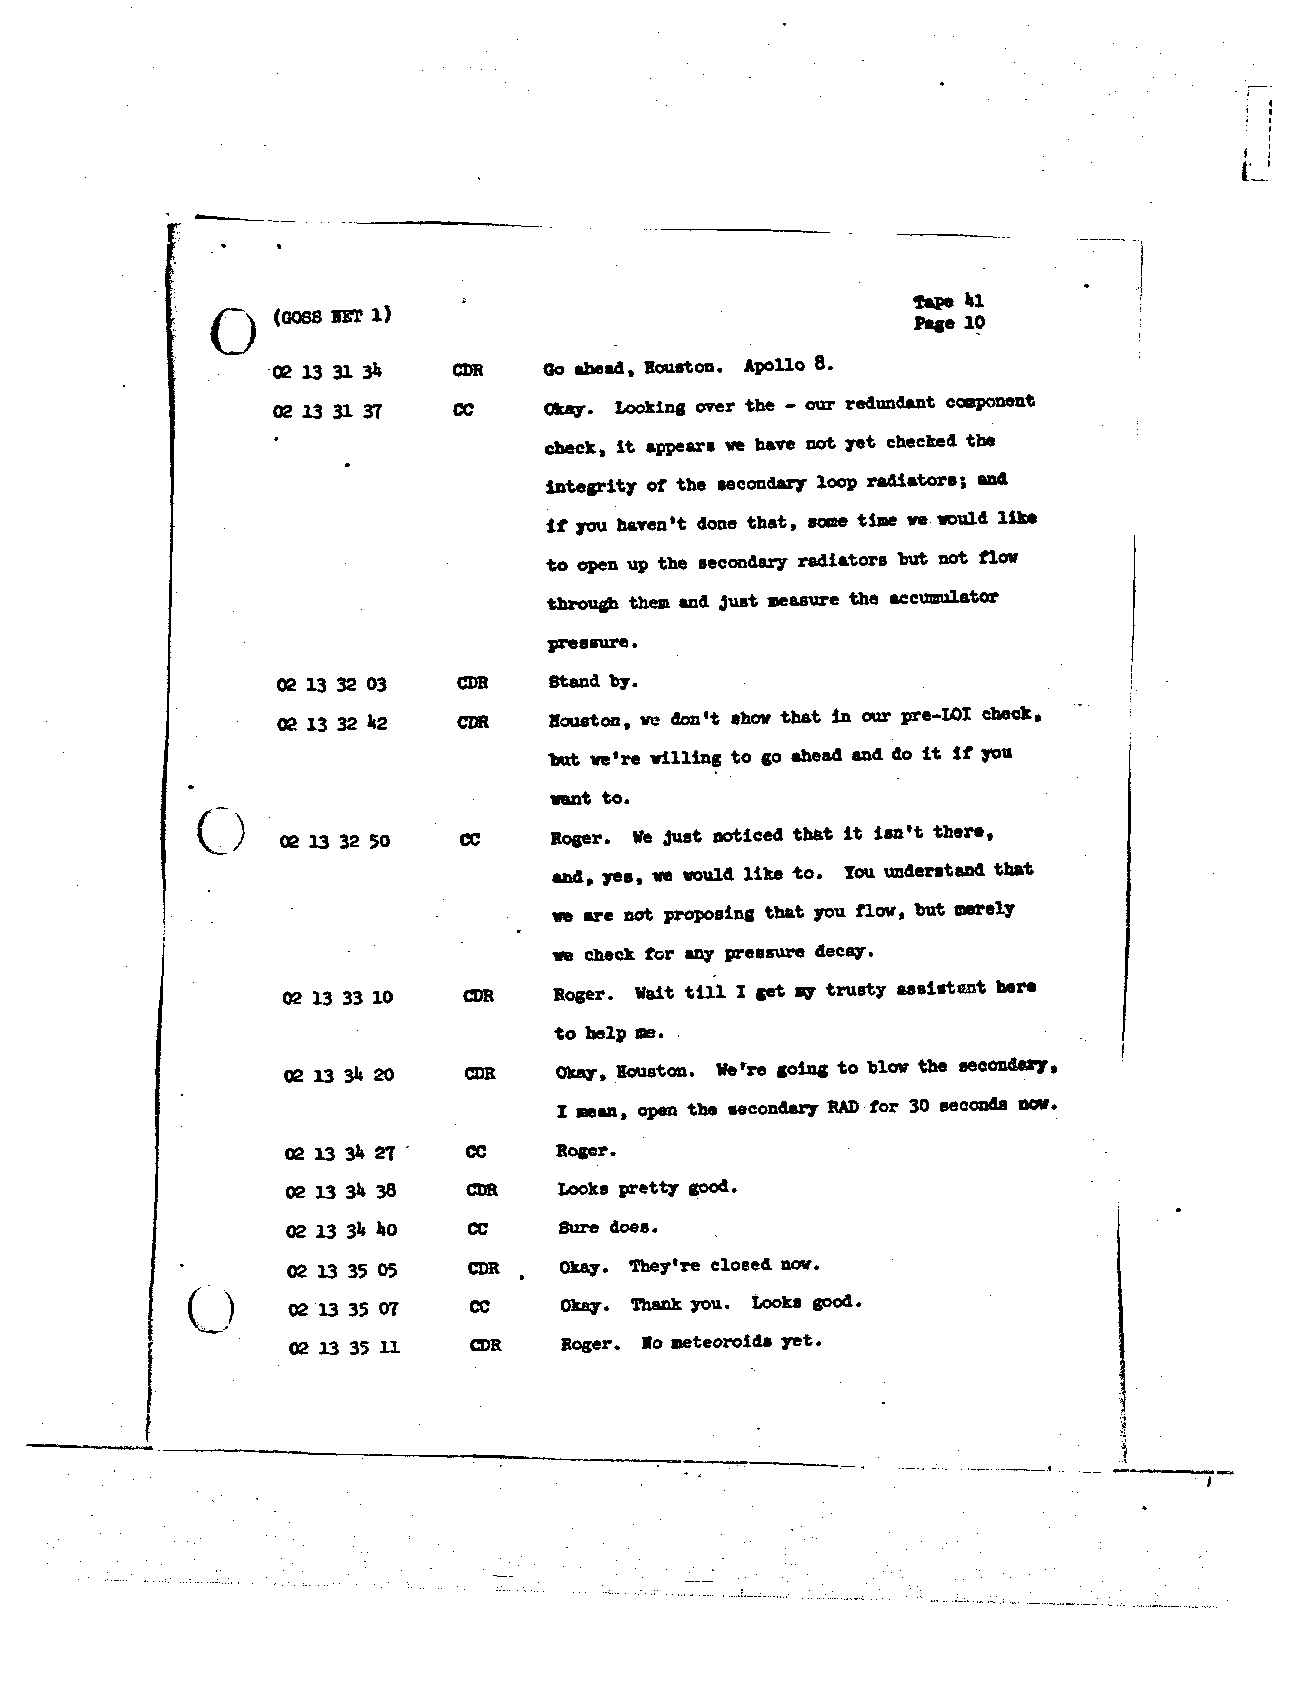 Page 321 of Apollo 8’s original transcript